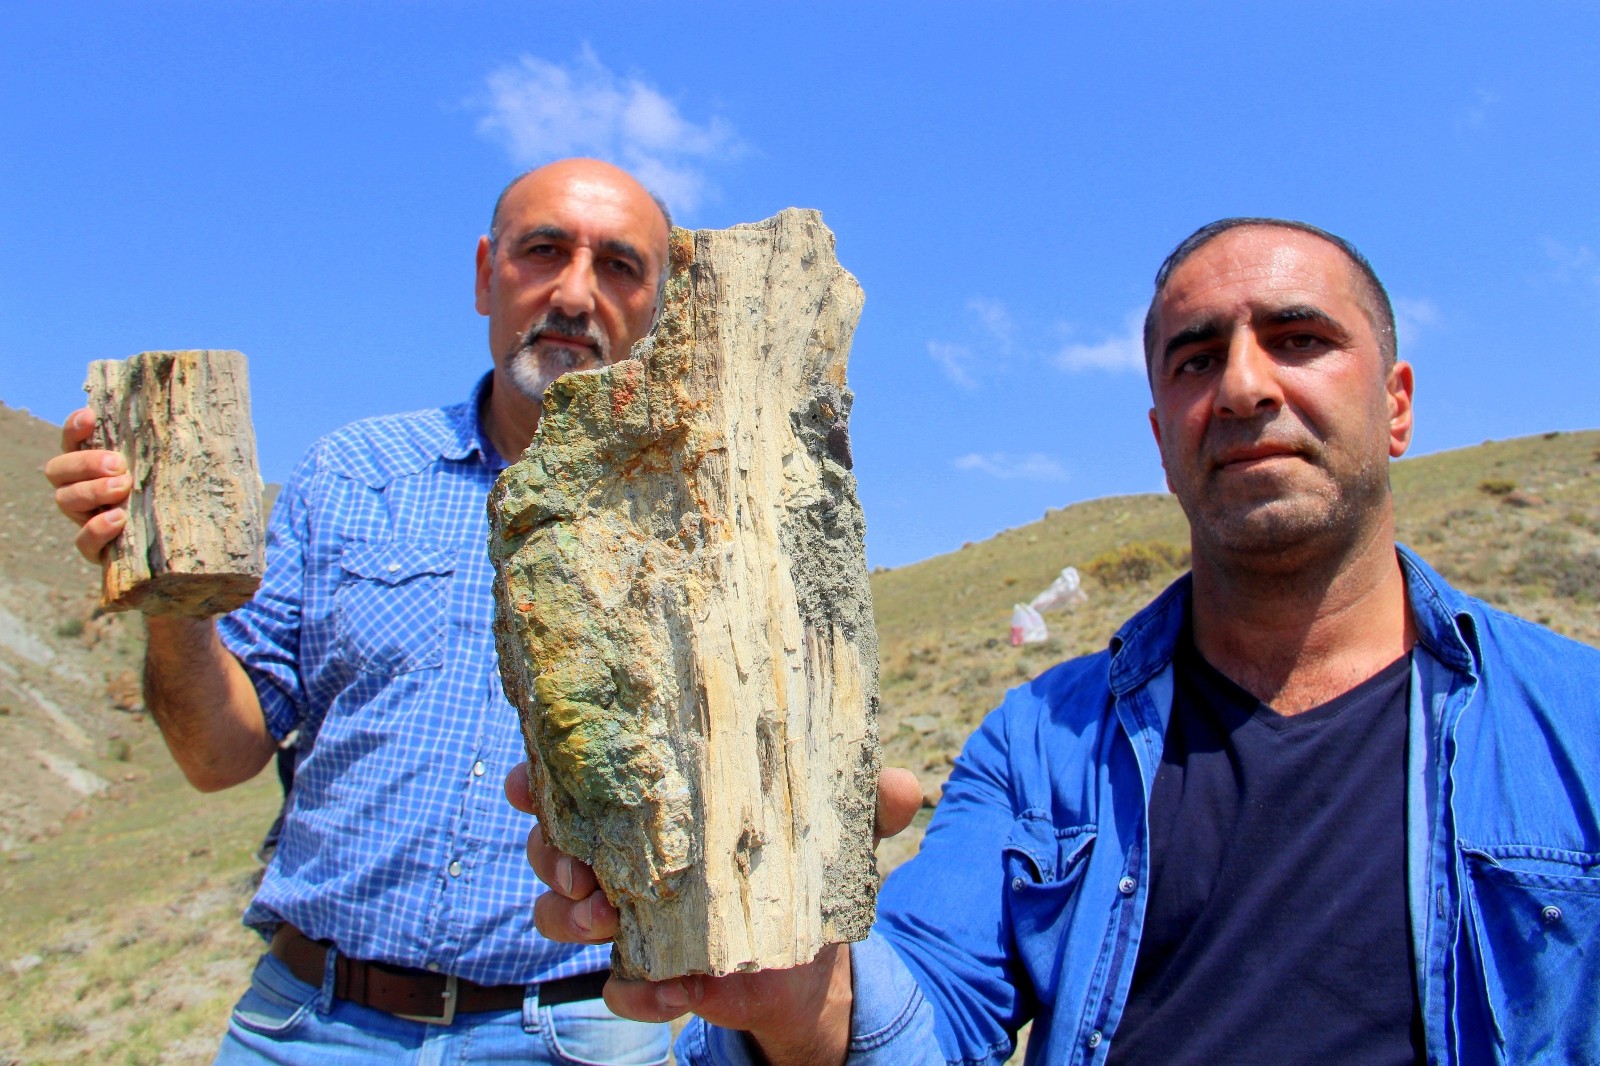 Erzurum’da 160 milyon yıllık keşif